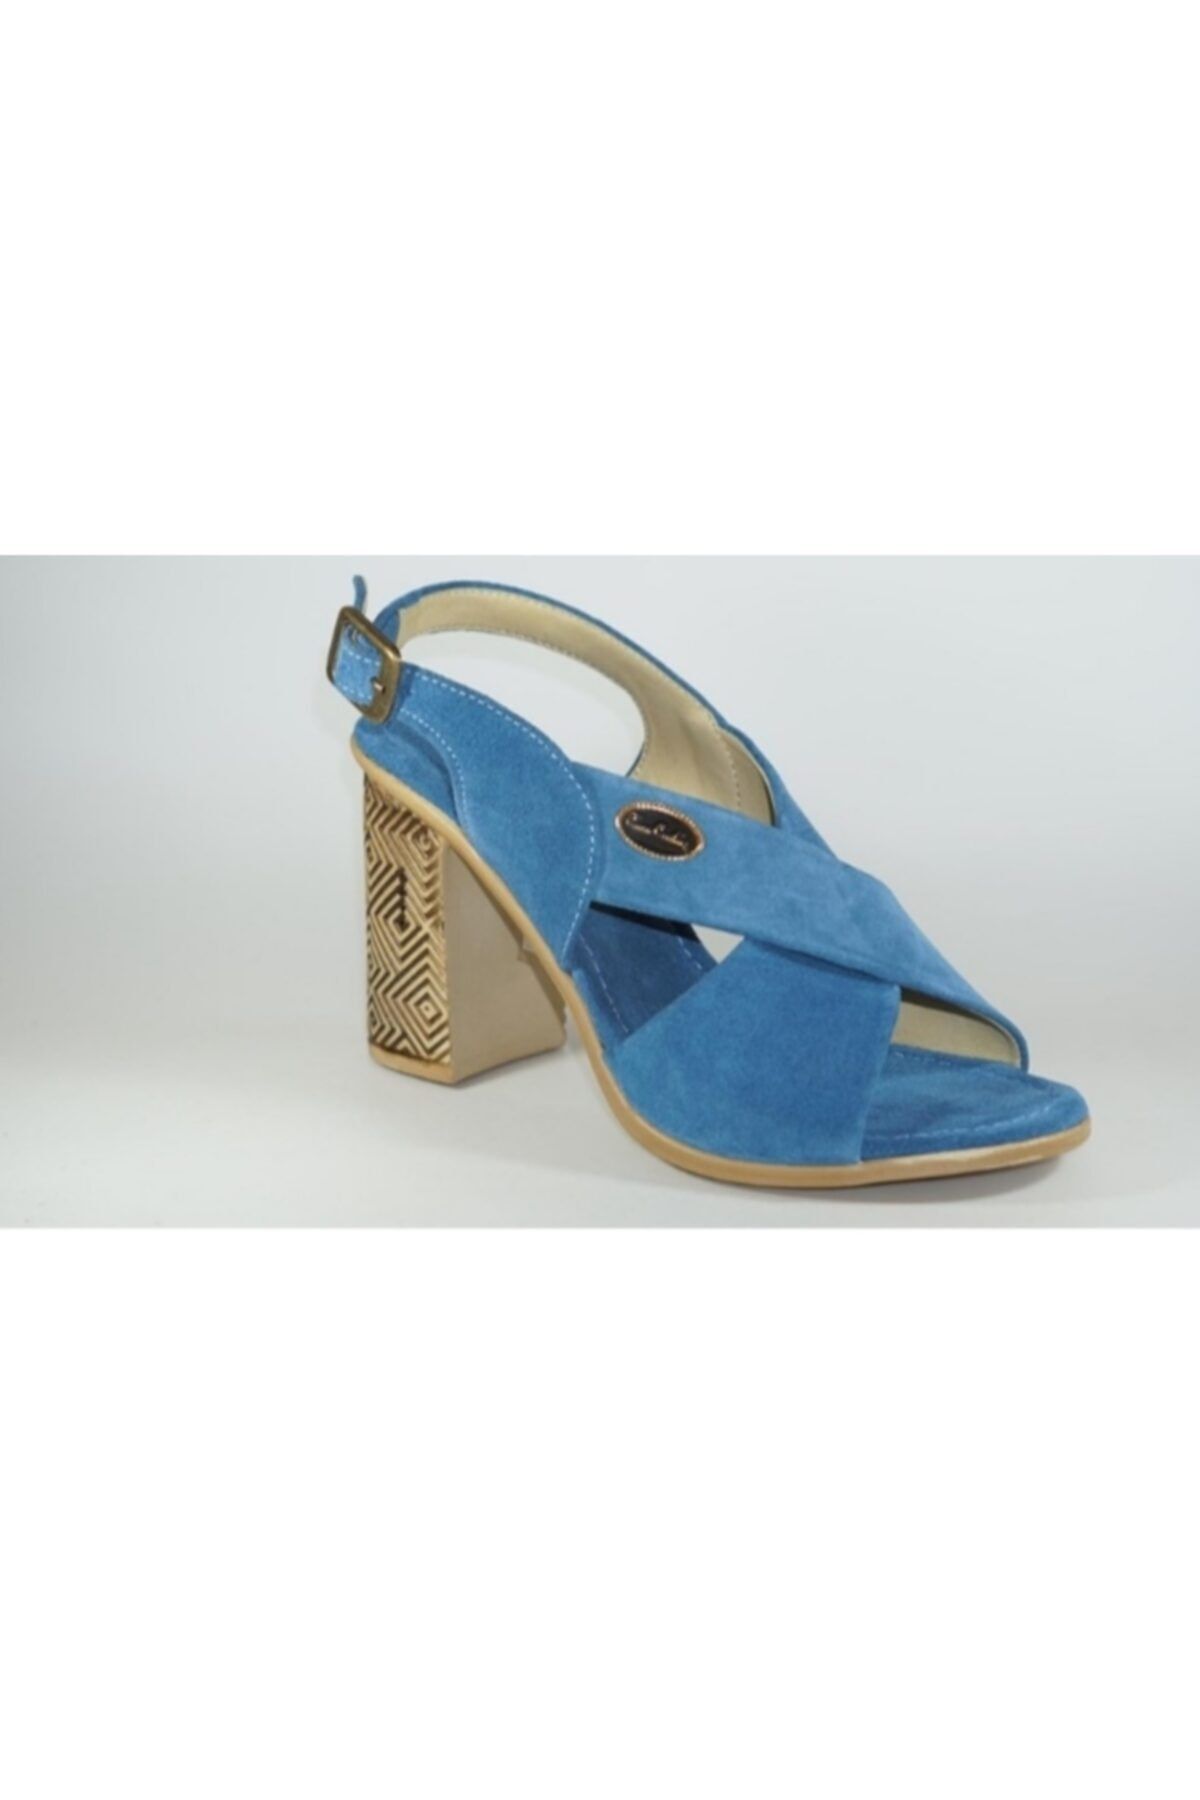 Pierre Cardin Kadın Mavi Topuklu Sandalet